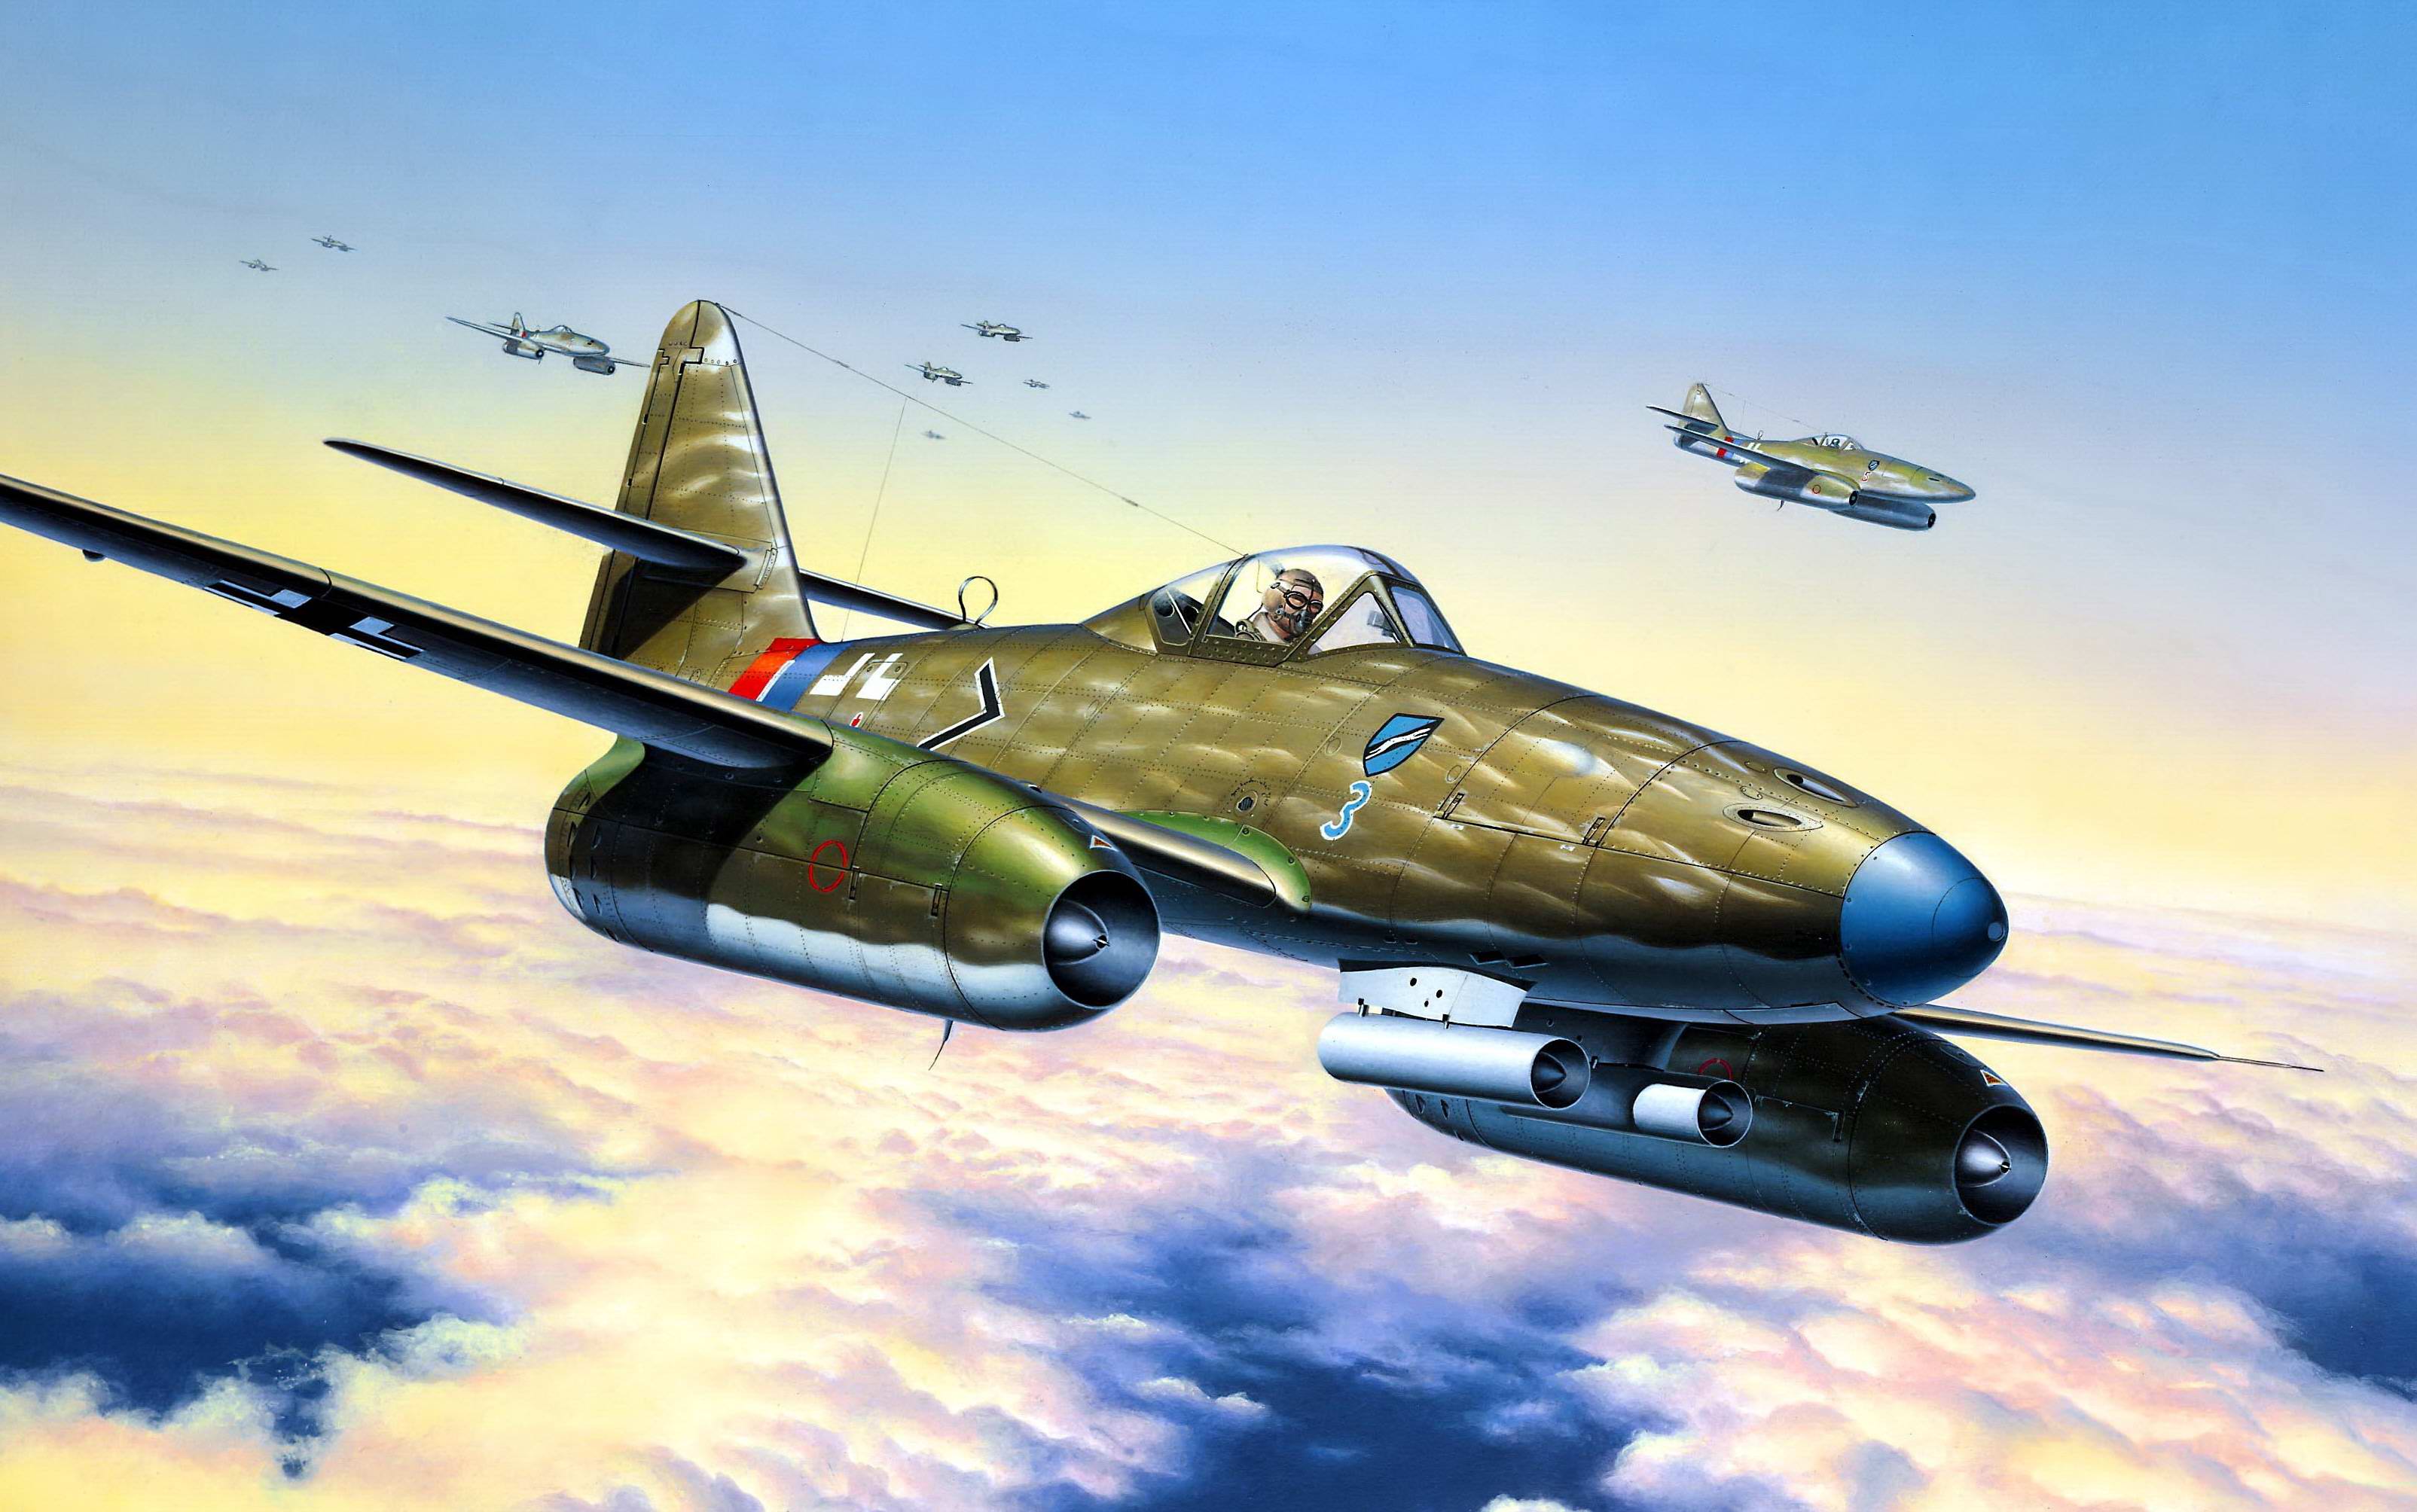 Messerschmitt Me 262 Wallpapers - Wallpaper Cave